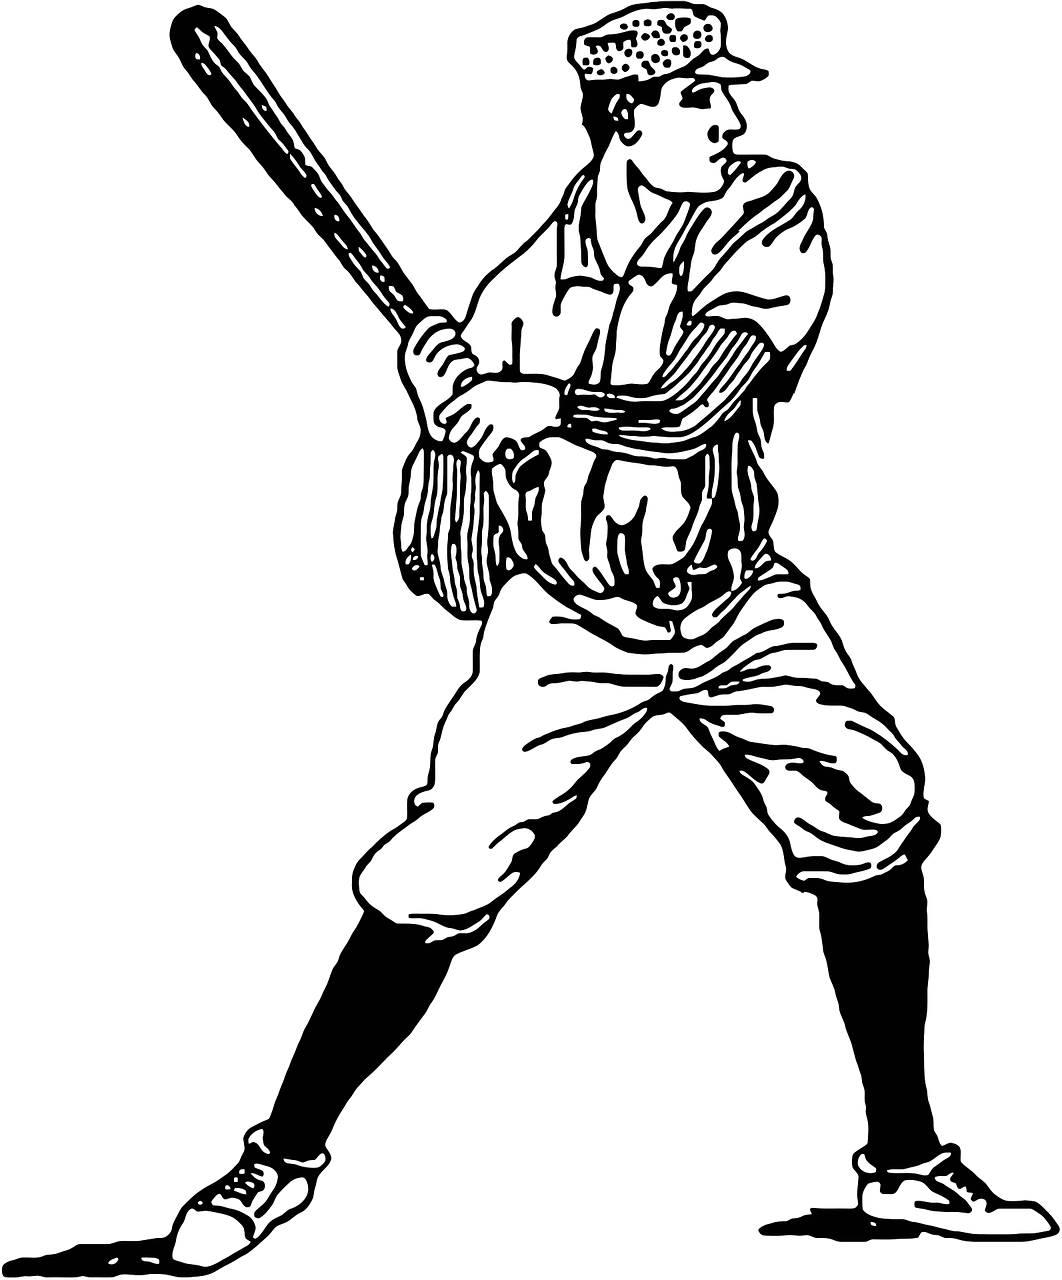 Vintage Baseball Batter Illustration PNG image